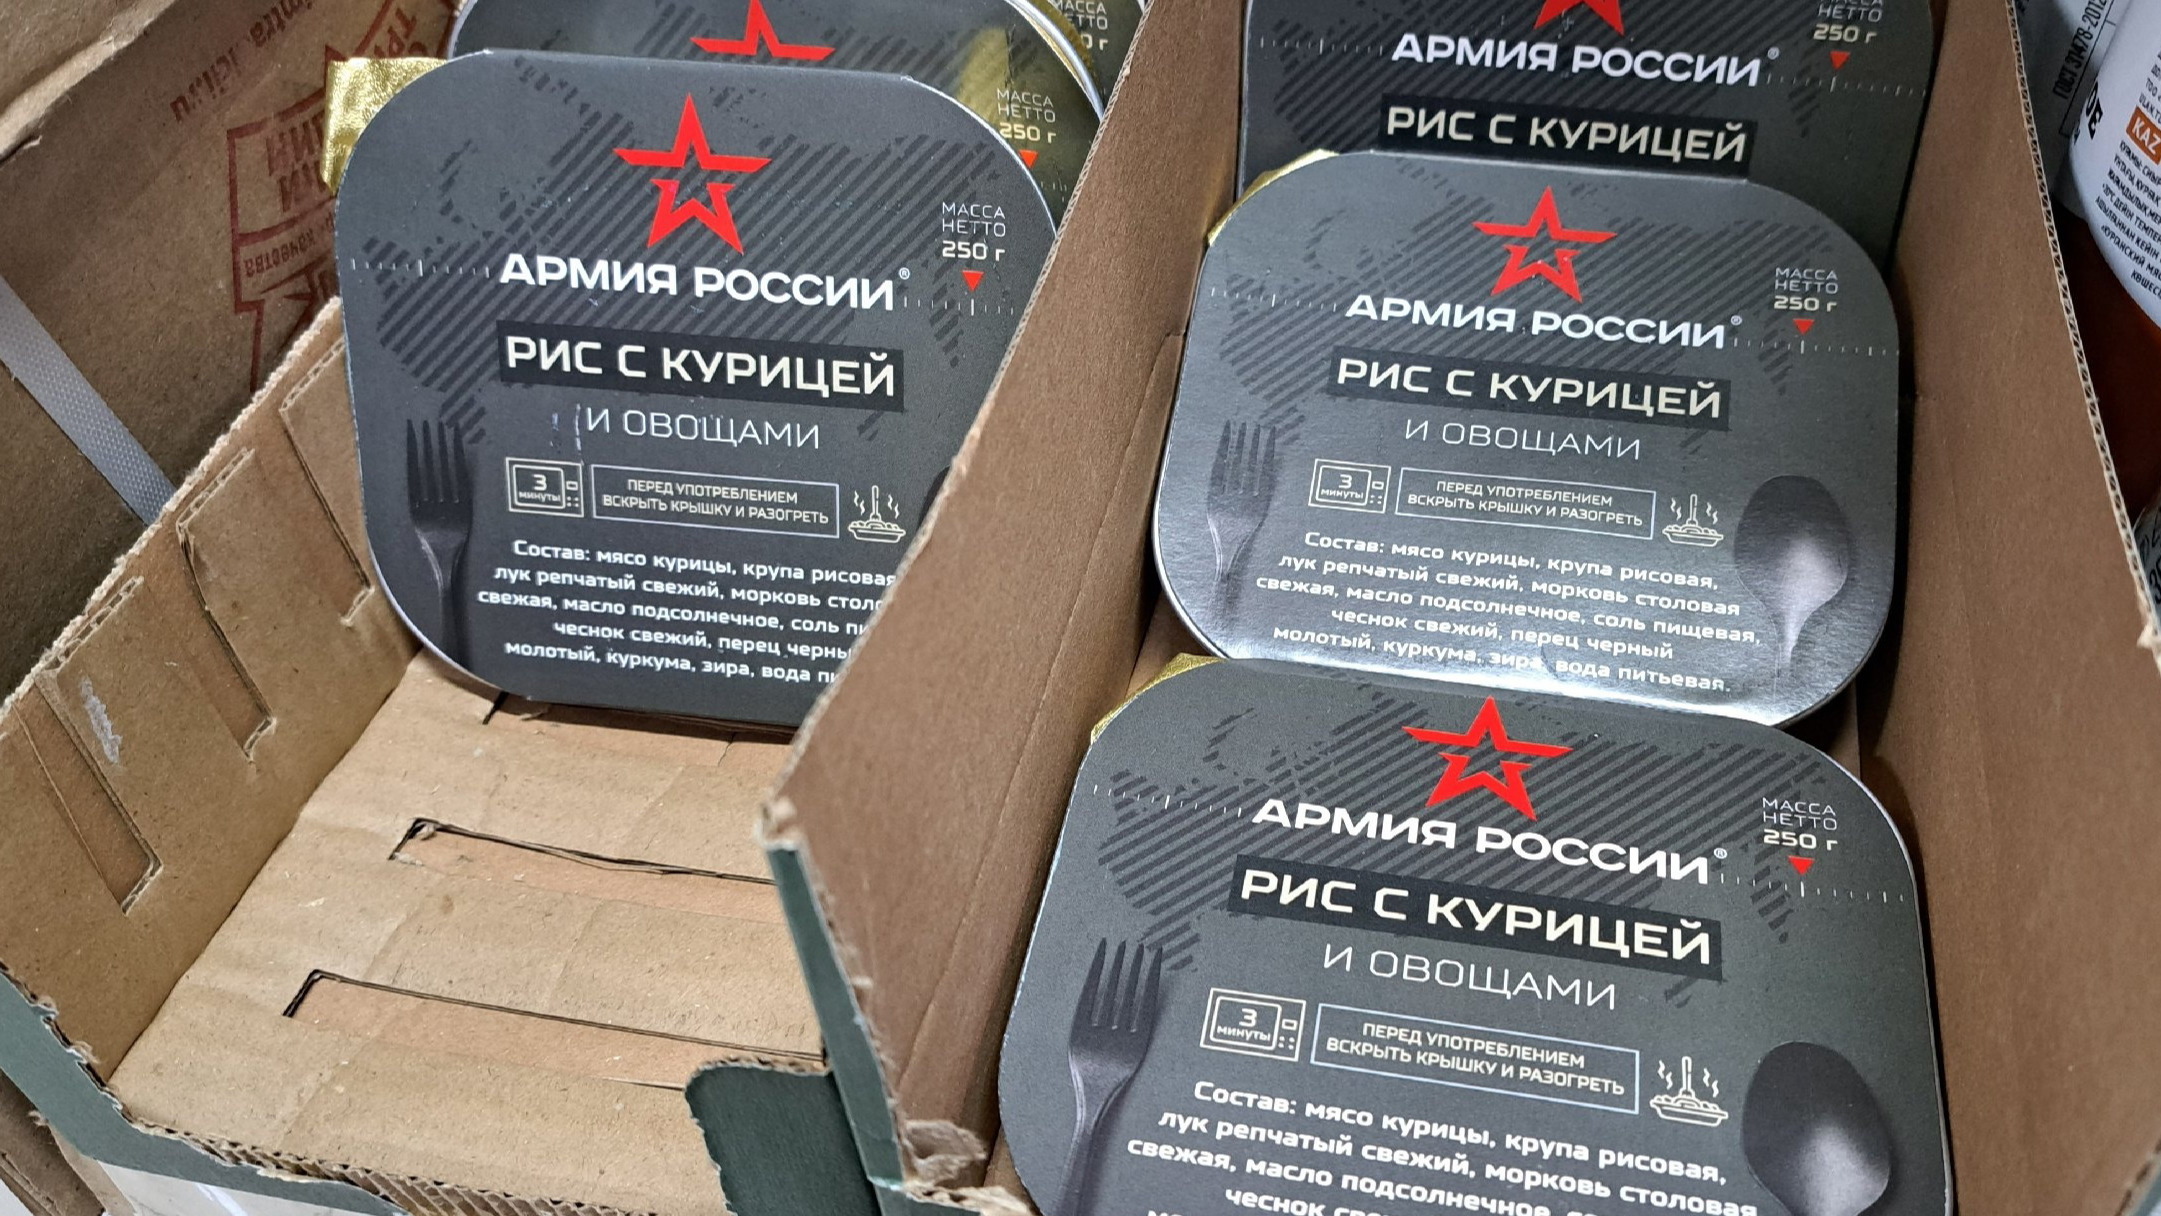 В омском «Светофоре» продают сухпайки «Армия России». Откуда они в открытой продаже?